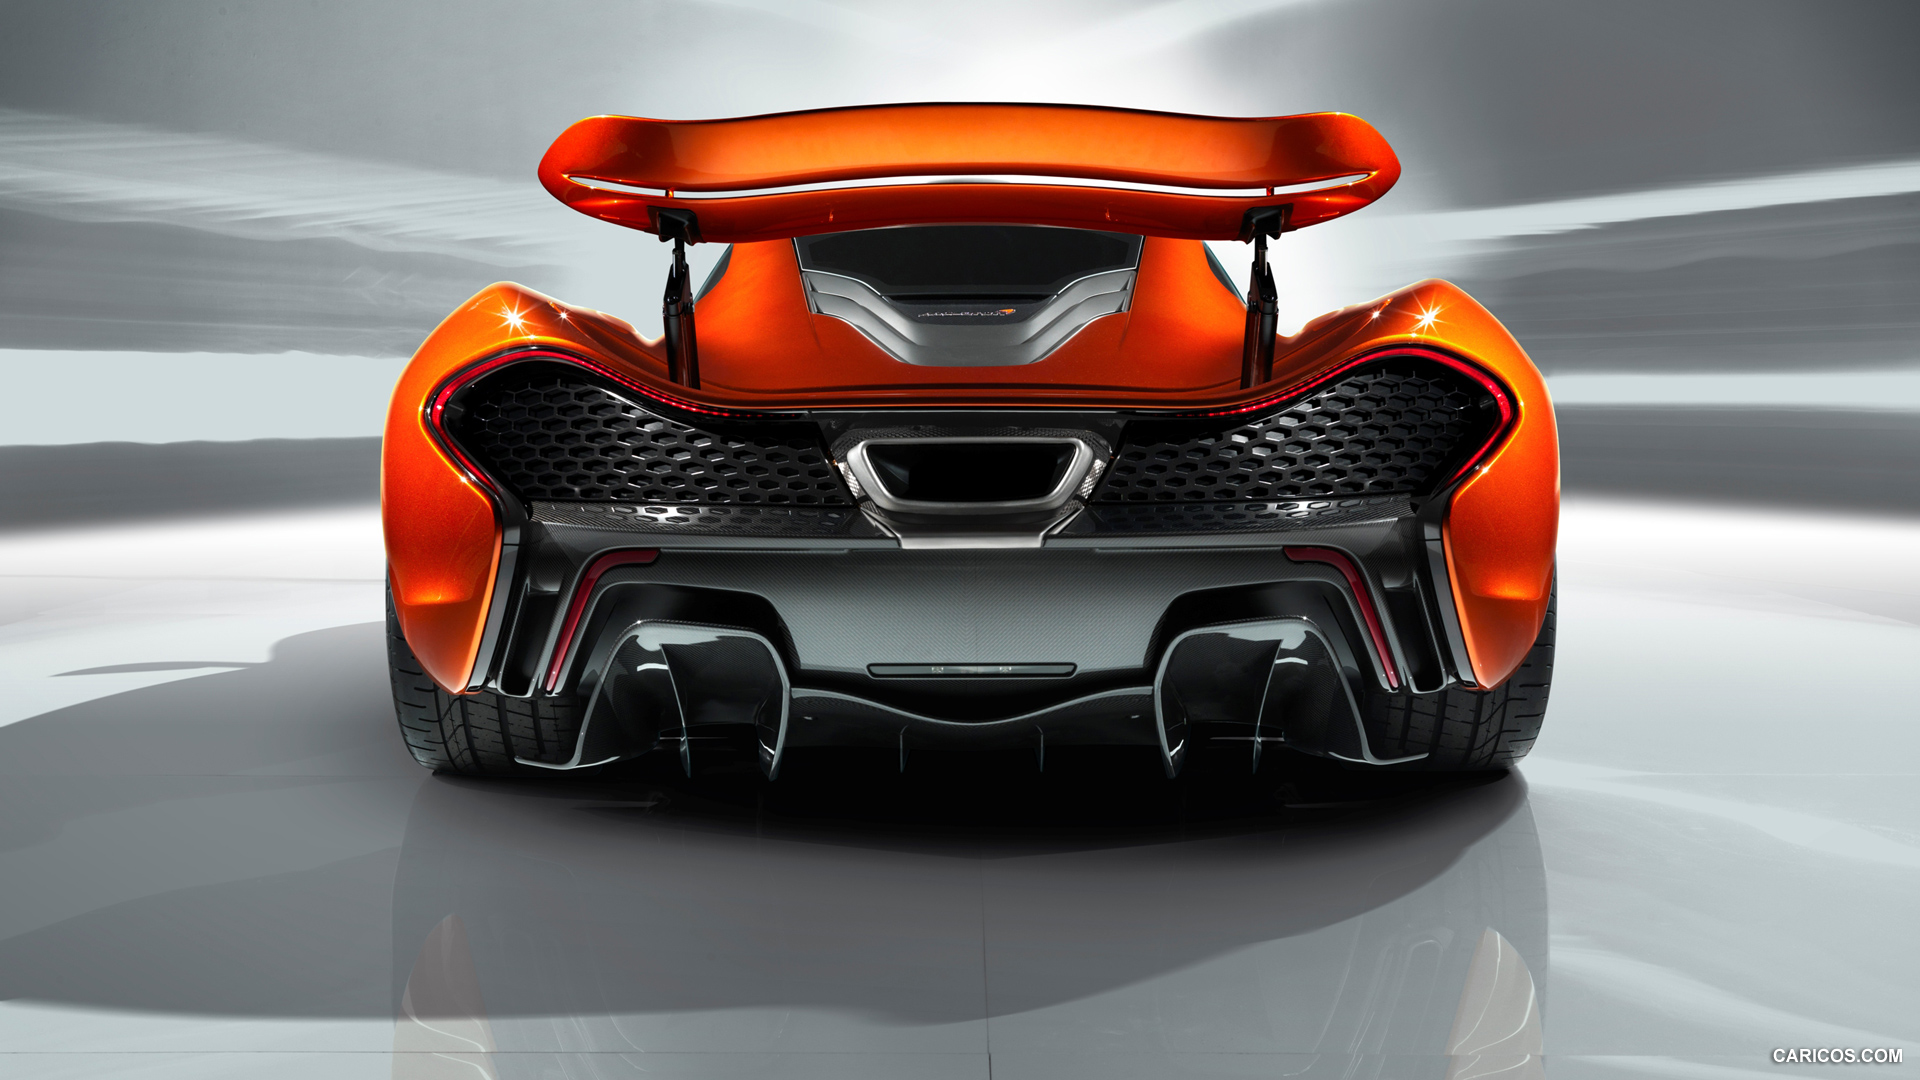 2012 McLaren P1 Concept  - Side, #13 of 15